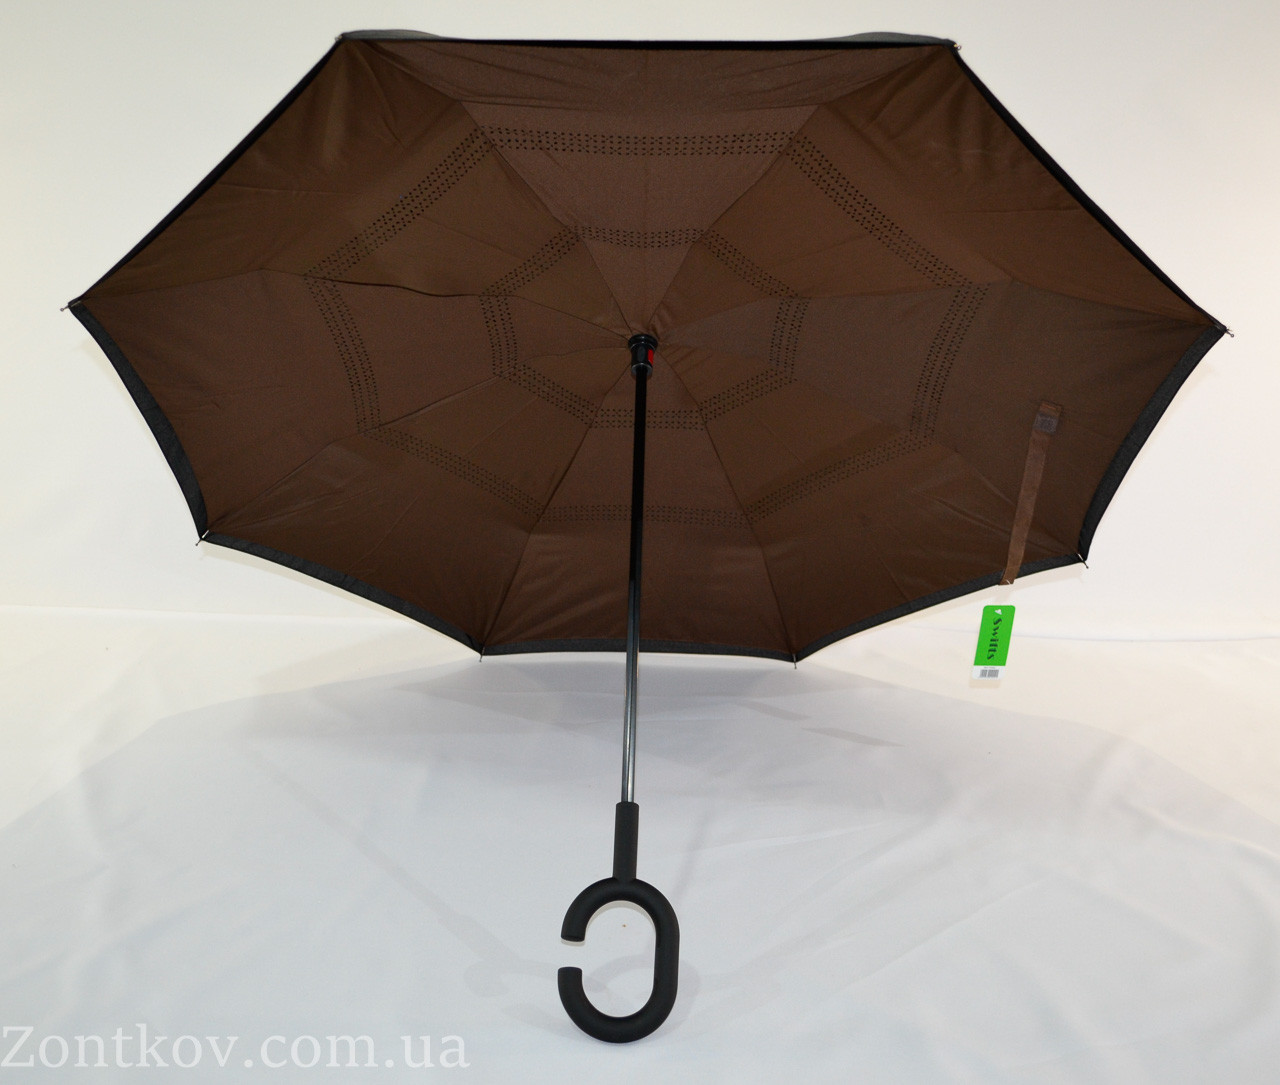 

Однотонный зонтик "Smart" с обратным сложением от фирмы "Swifts", Коричневый